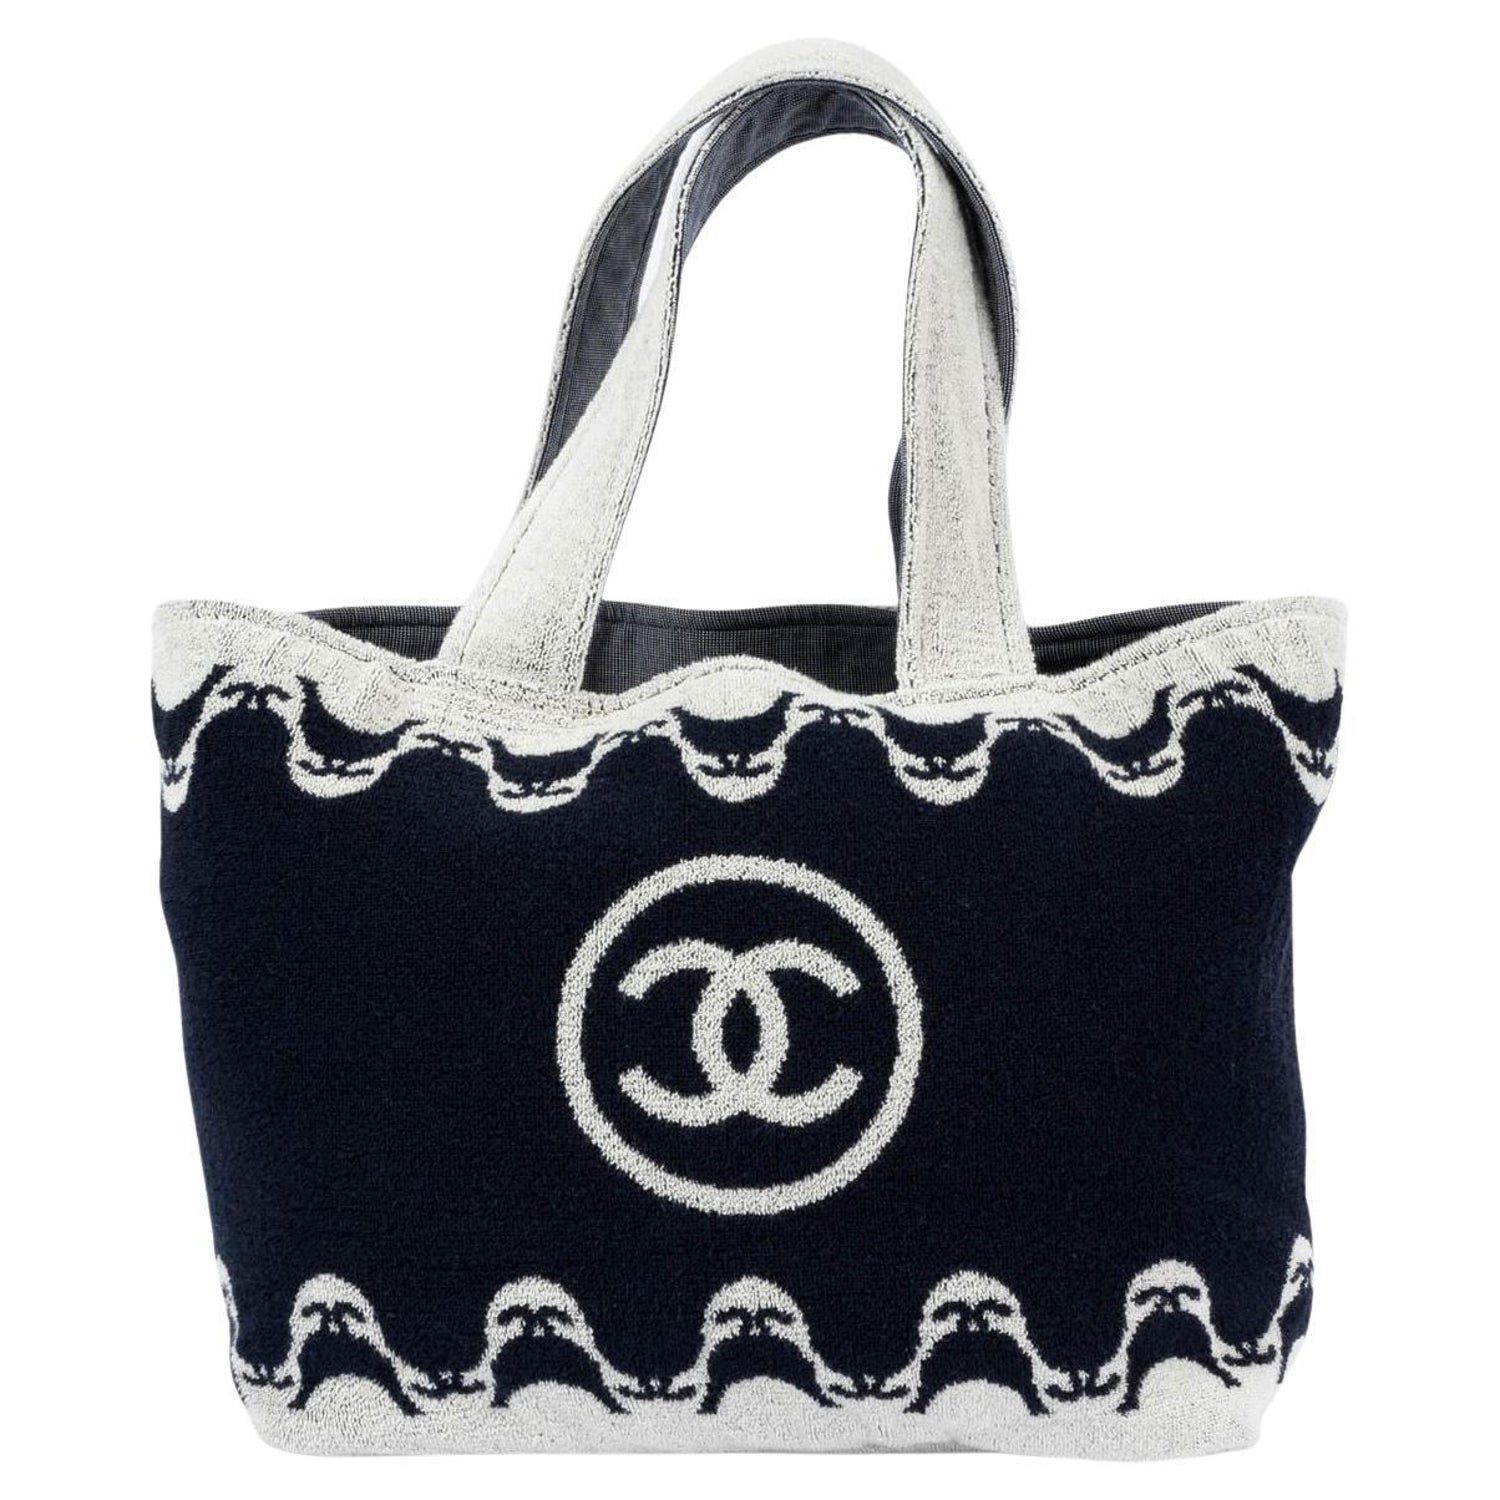 Chanel Blue Bag 2021 - 6 For Sale on 1stDibs